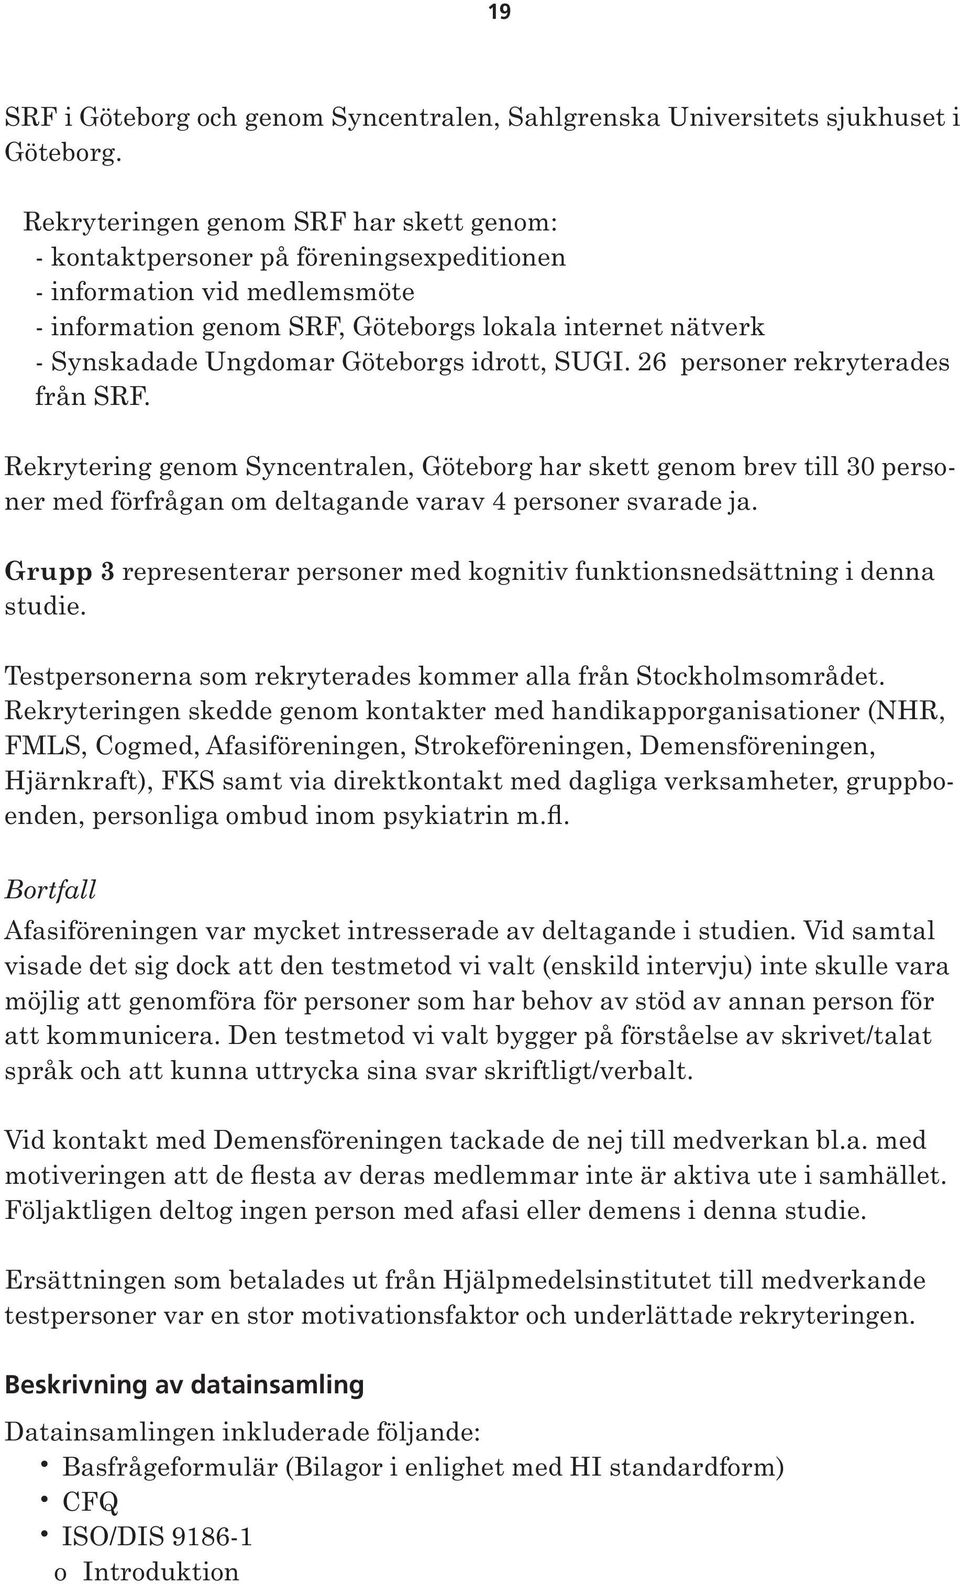 Göteborgs idrott, SUGI. 26 personer rekryterades från SRF. Rekrytering genom Syncentralen, Göteborg har skett genom brev till 30 personer med förfrågan om deltagande varav 4 personer svarade ja.